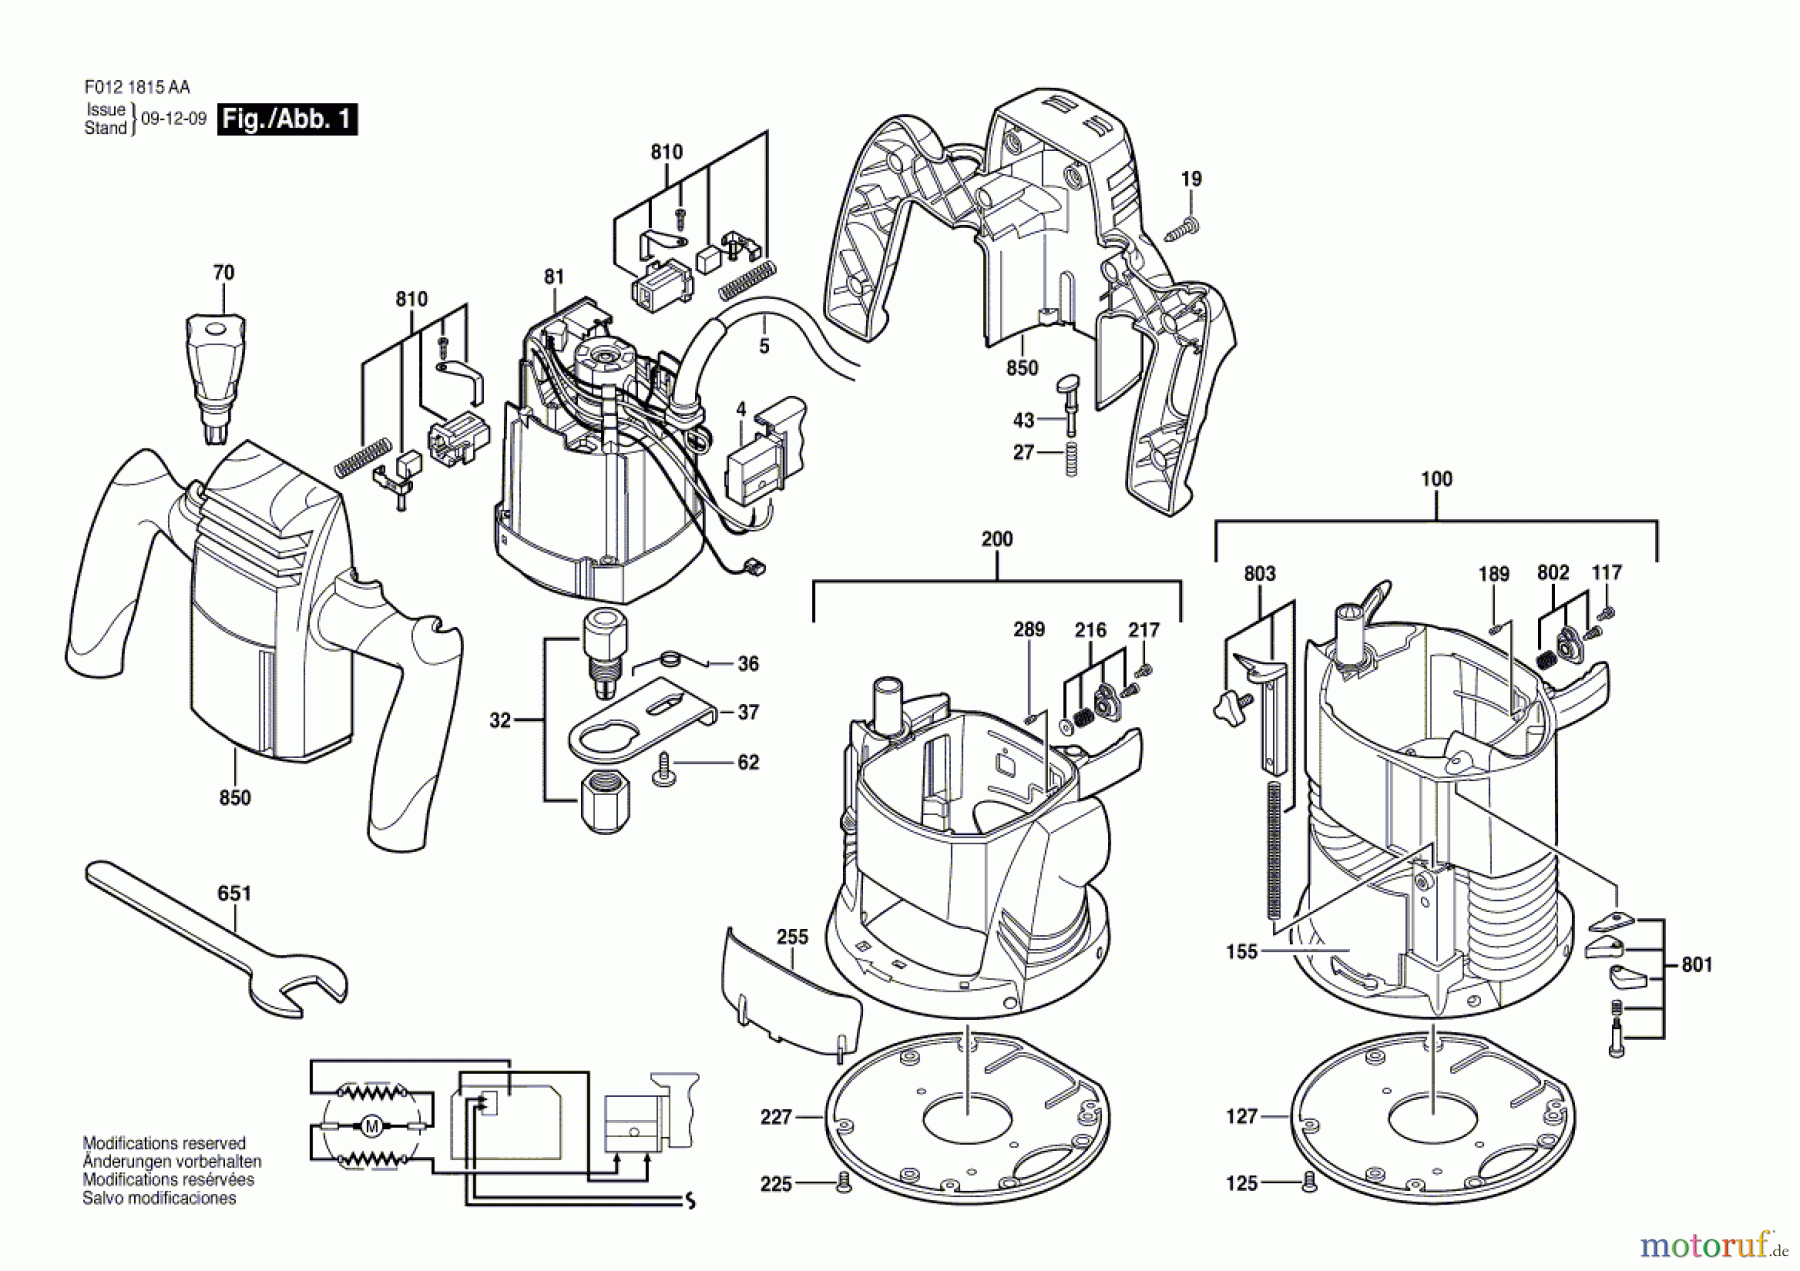  Bosch Werkzeug Motorregeleinheit 1815 Seite 1